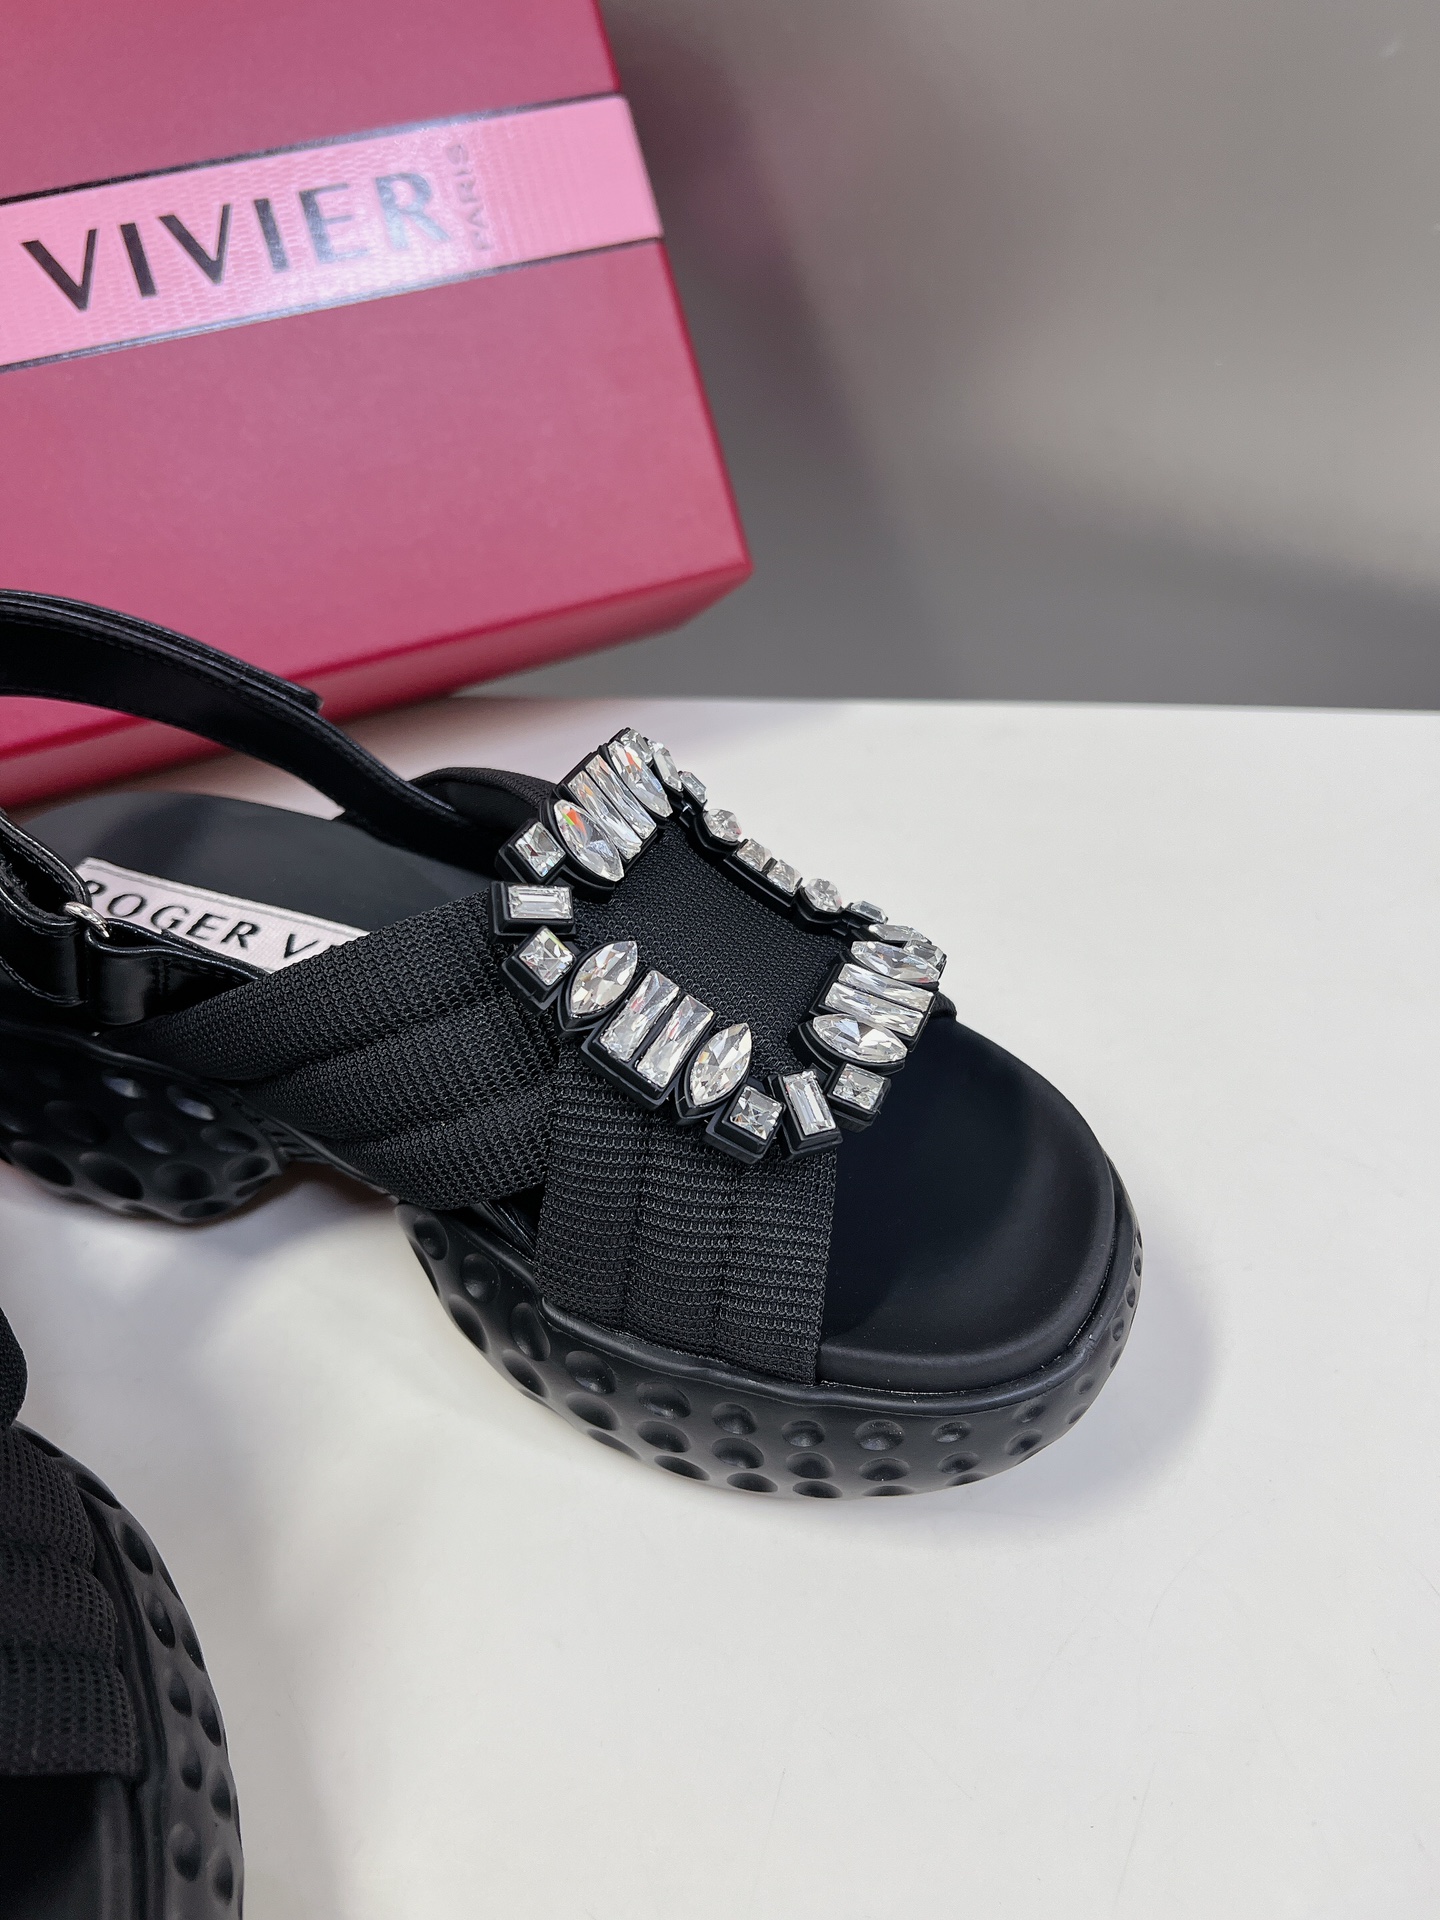 VivRunMoonlight钻扣厚底凉鞋时尚邂逅活力运动风就诞生了品牌倍受喜爱的运动鞋系列对于想要凉鞋